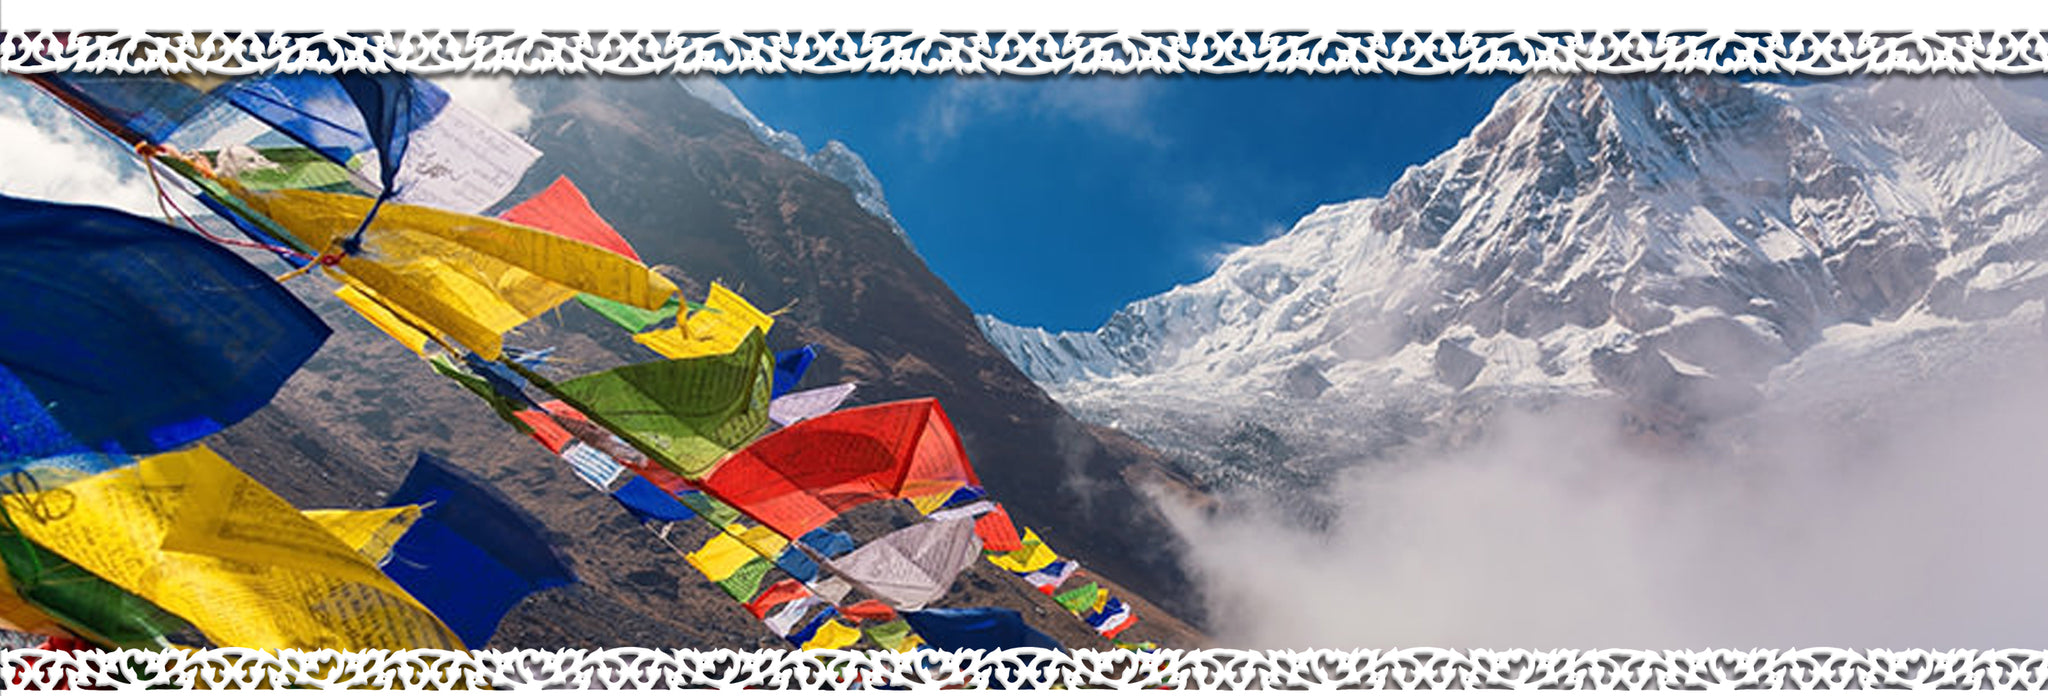 iBodhi Nepal Information Page